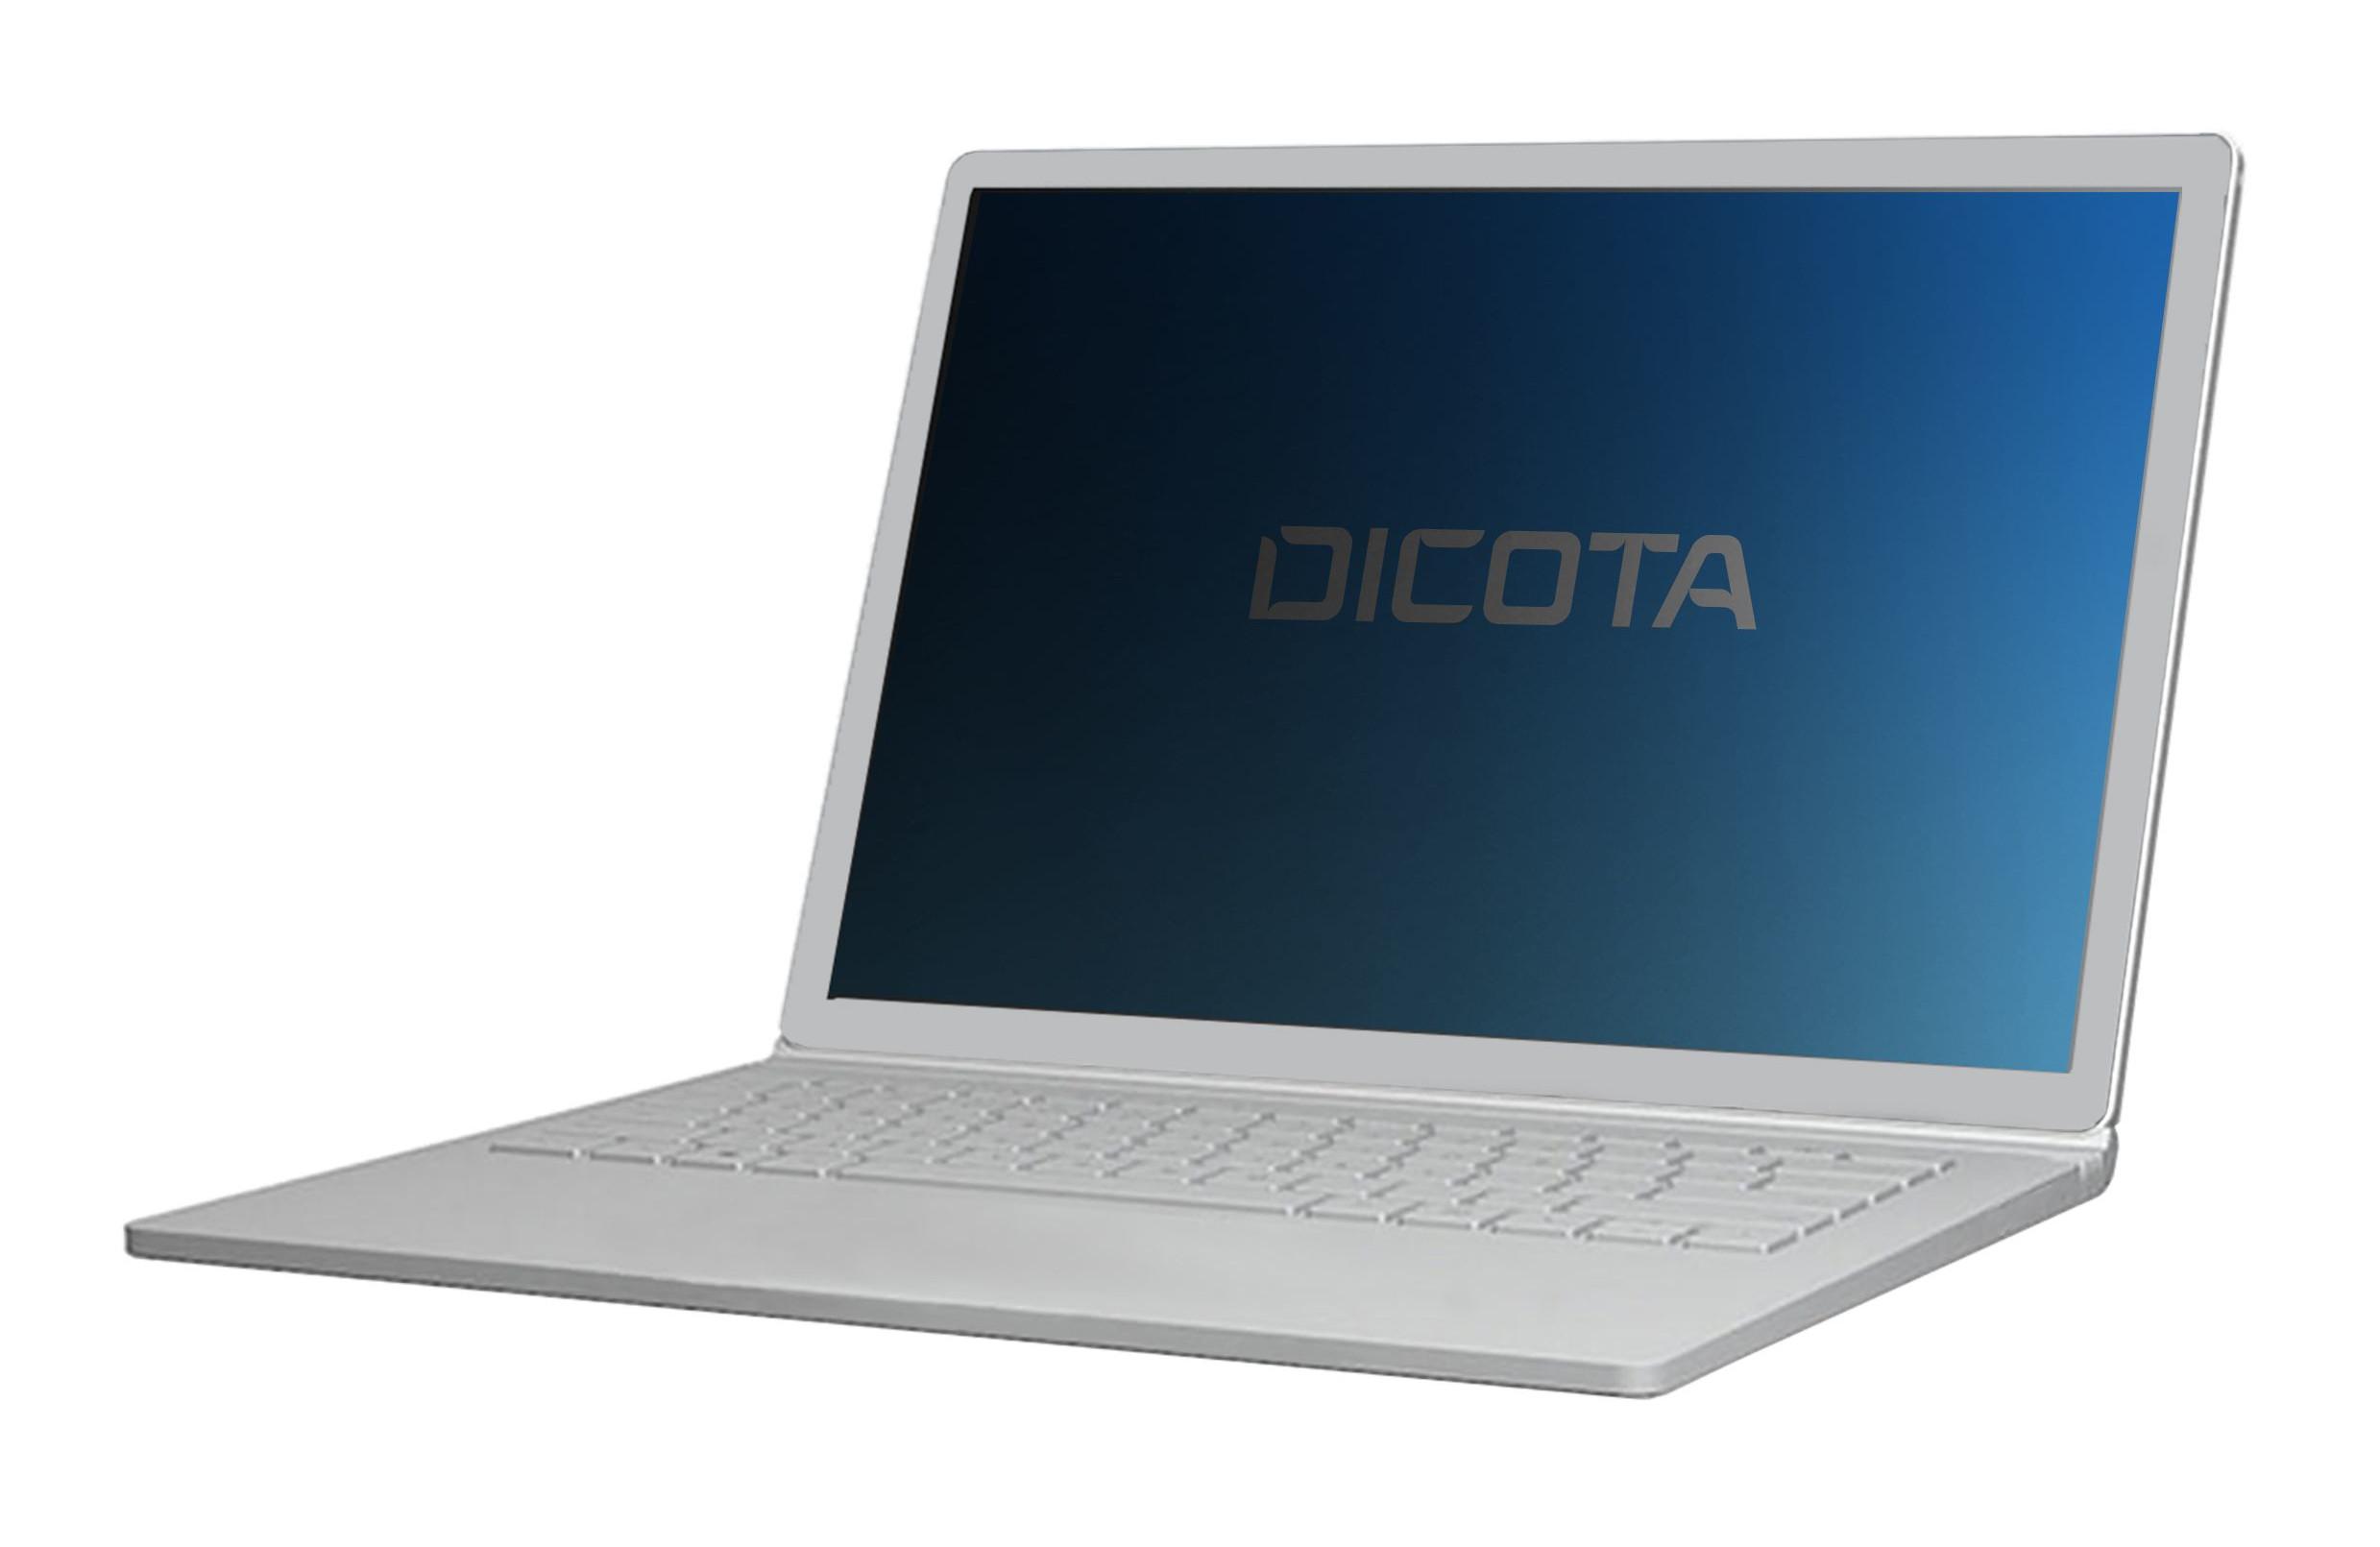 DICOTA  D31775 filtre anti-reflets pour écran et filtre de confidentialité Filtre de confidentialité sans bords pour ordinateur 38,1 cm (15") 